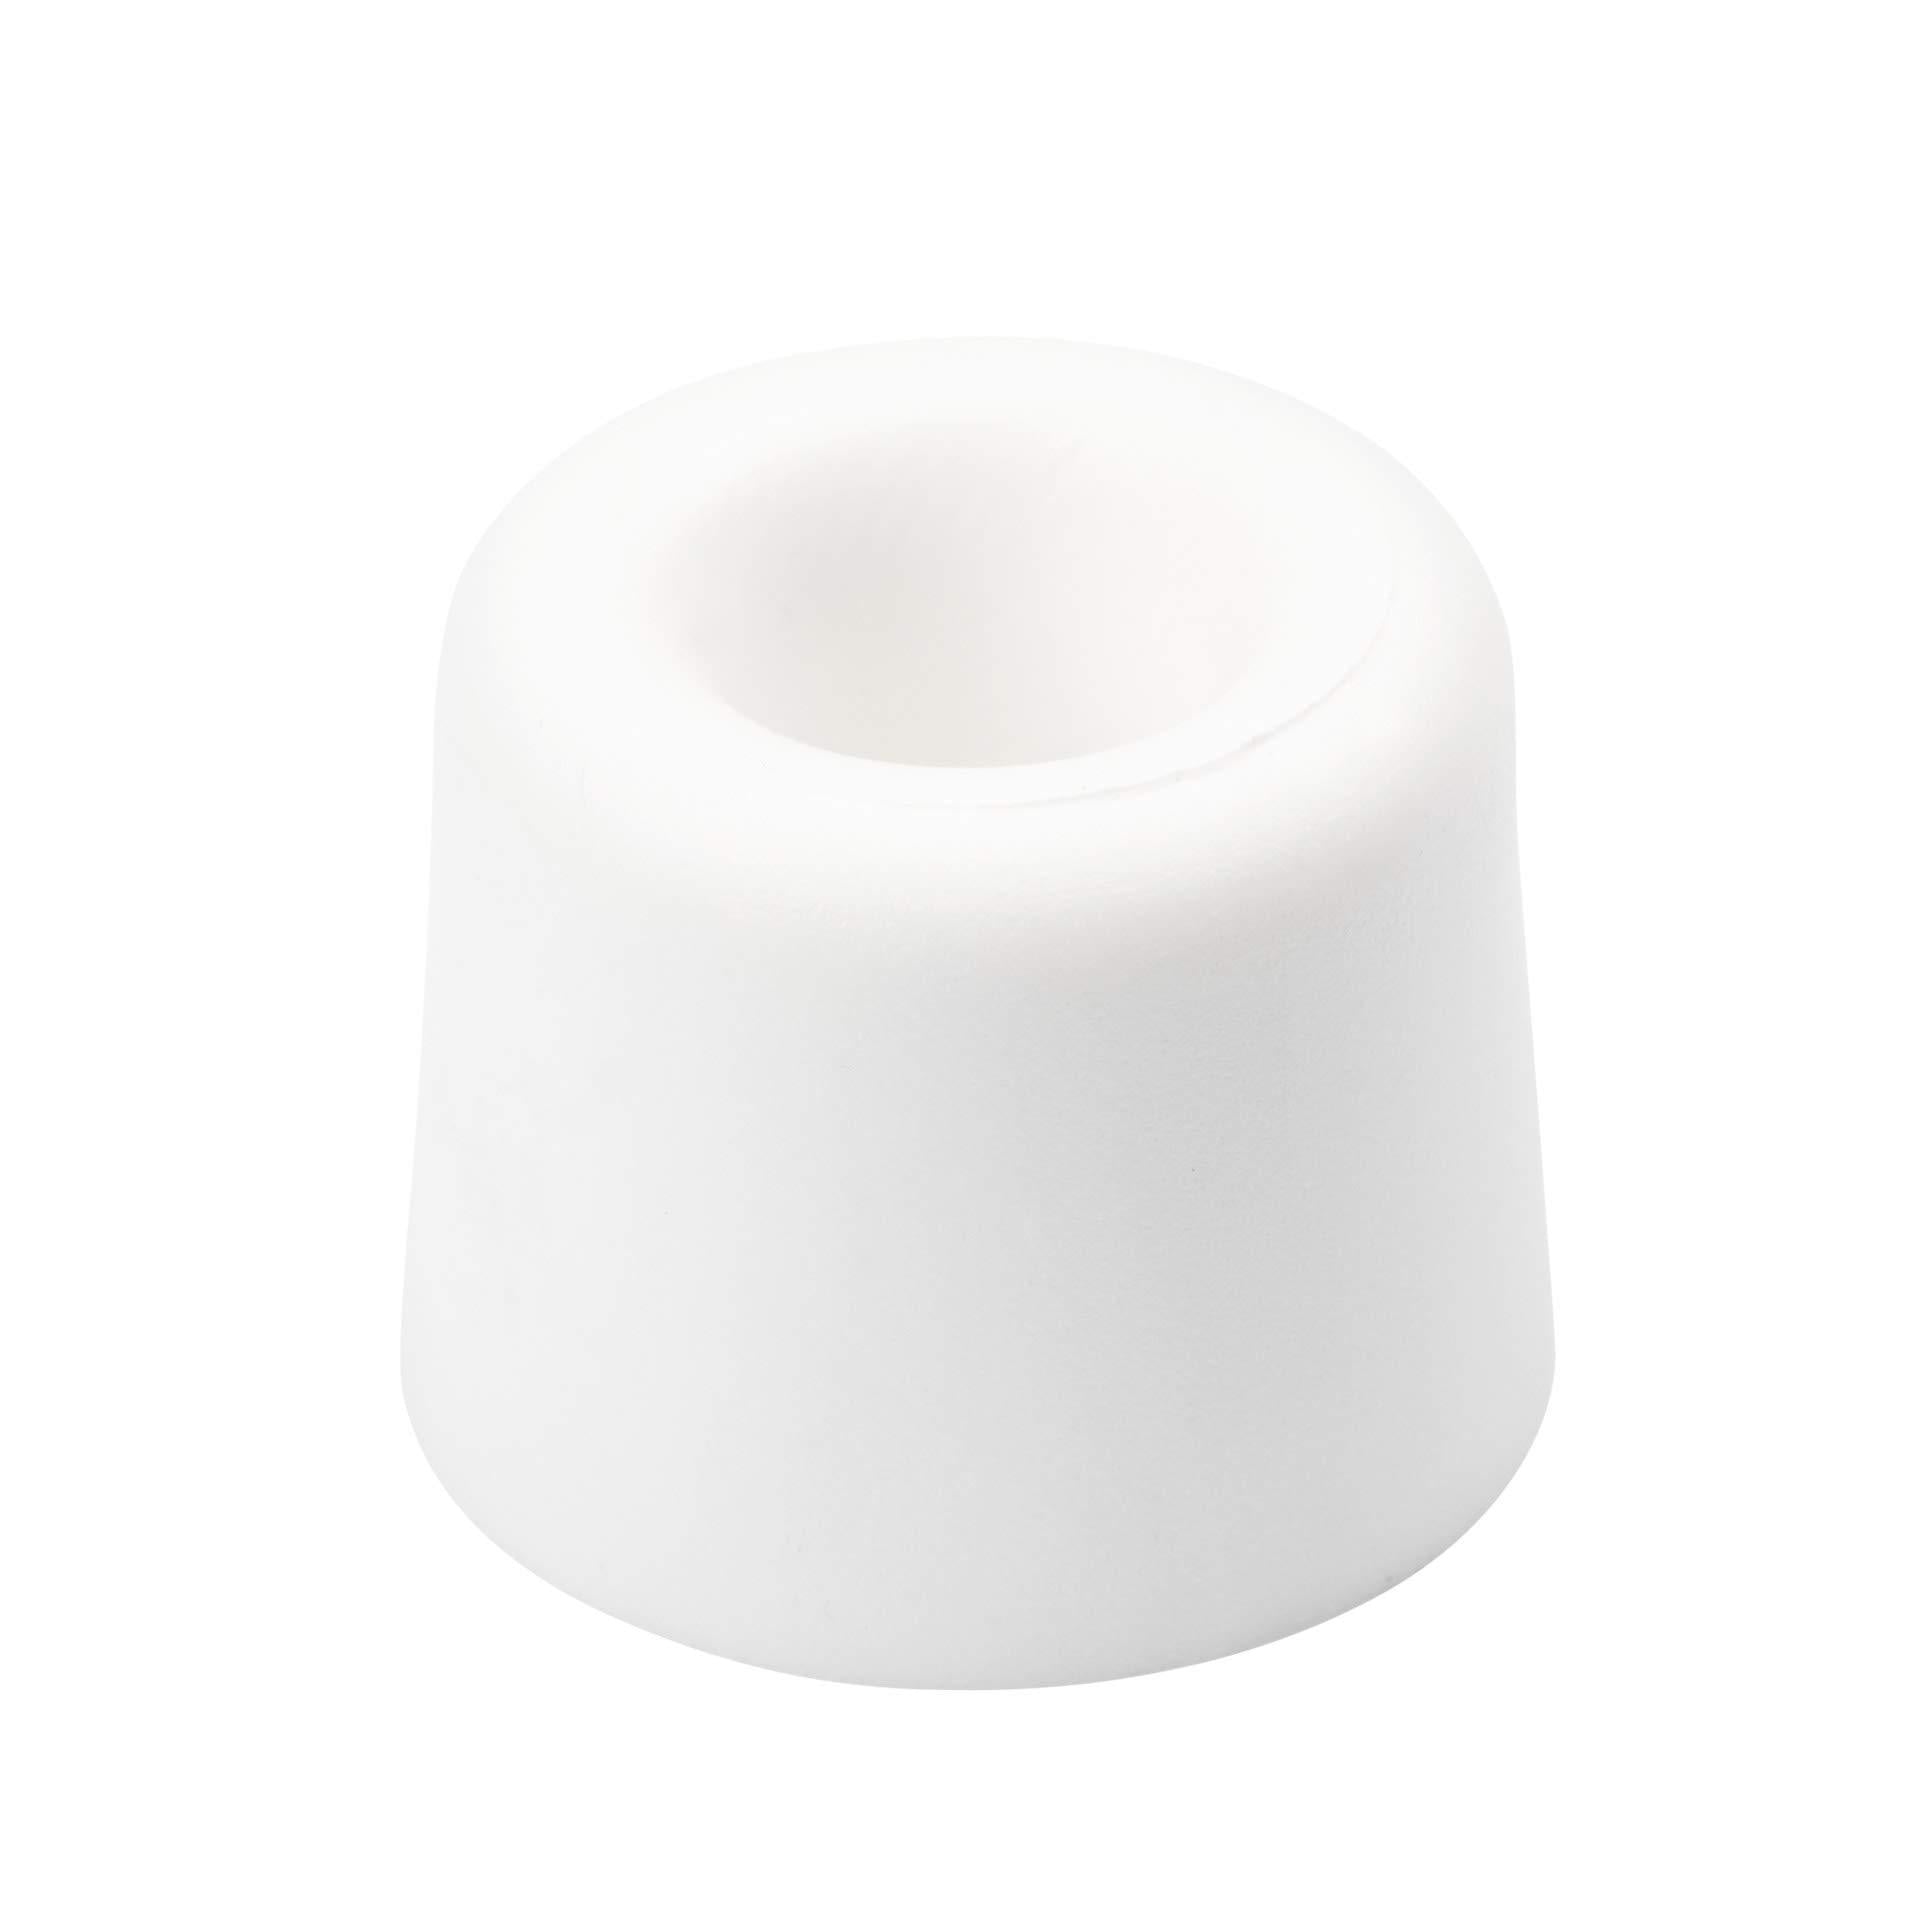 LouMaxx Türstopper Boden Schrauben aus Gummi - 3er Set in weiß - Türstopper Gummi - Türstopper Kunststoff - Türstopper Bodenmontage